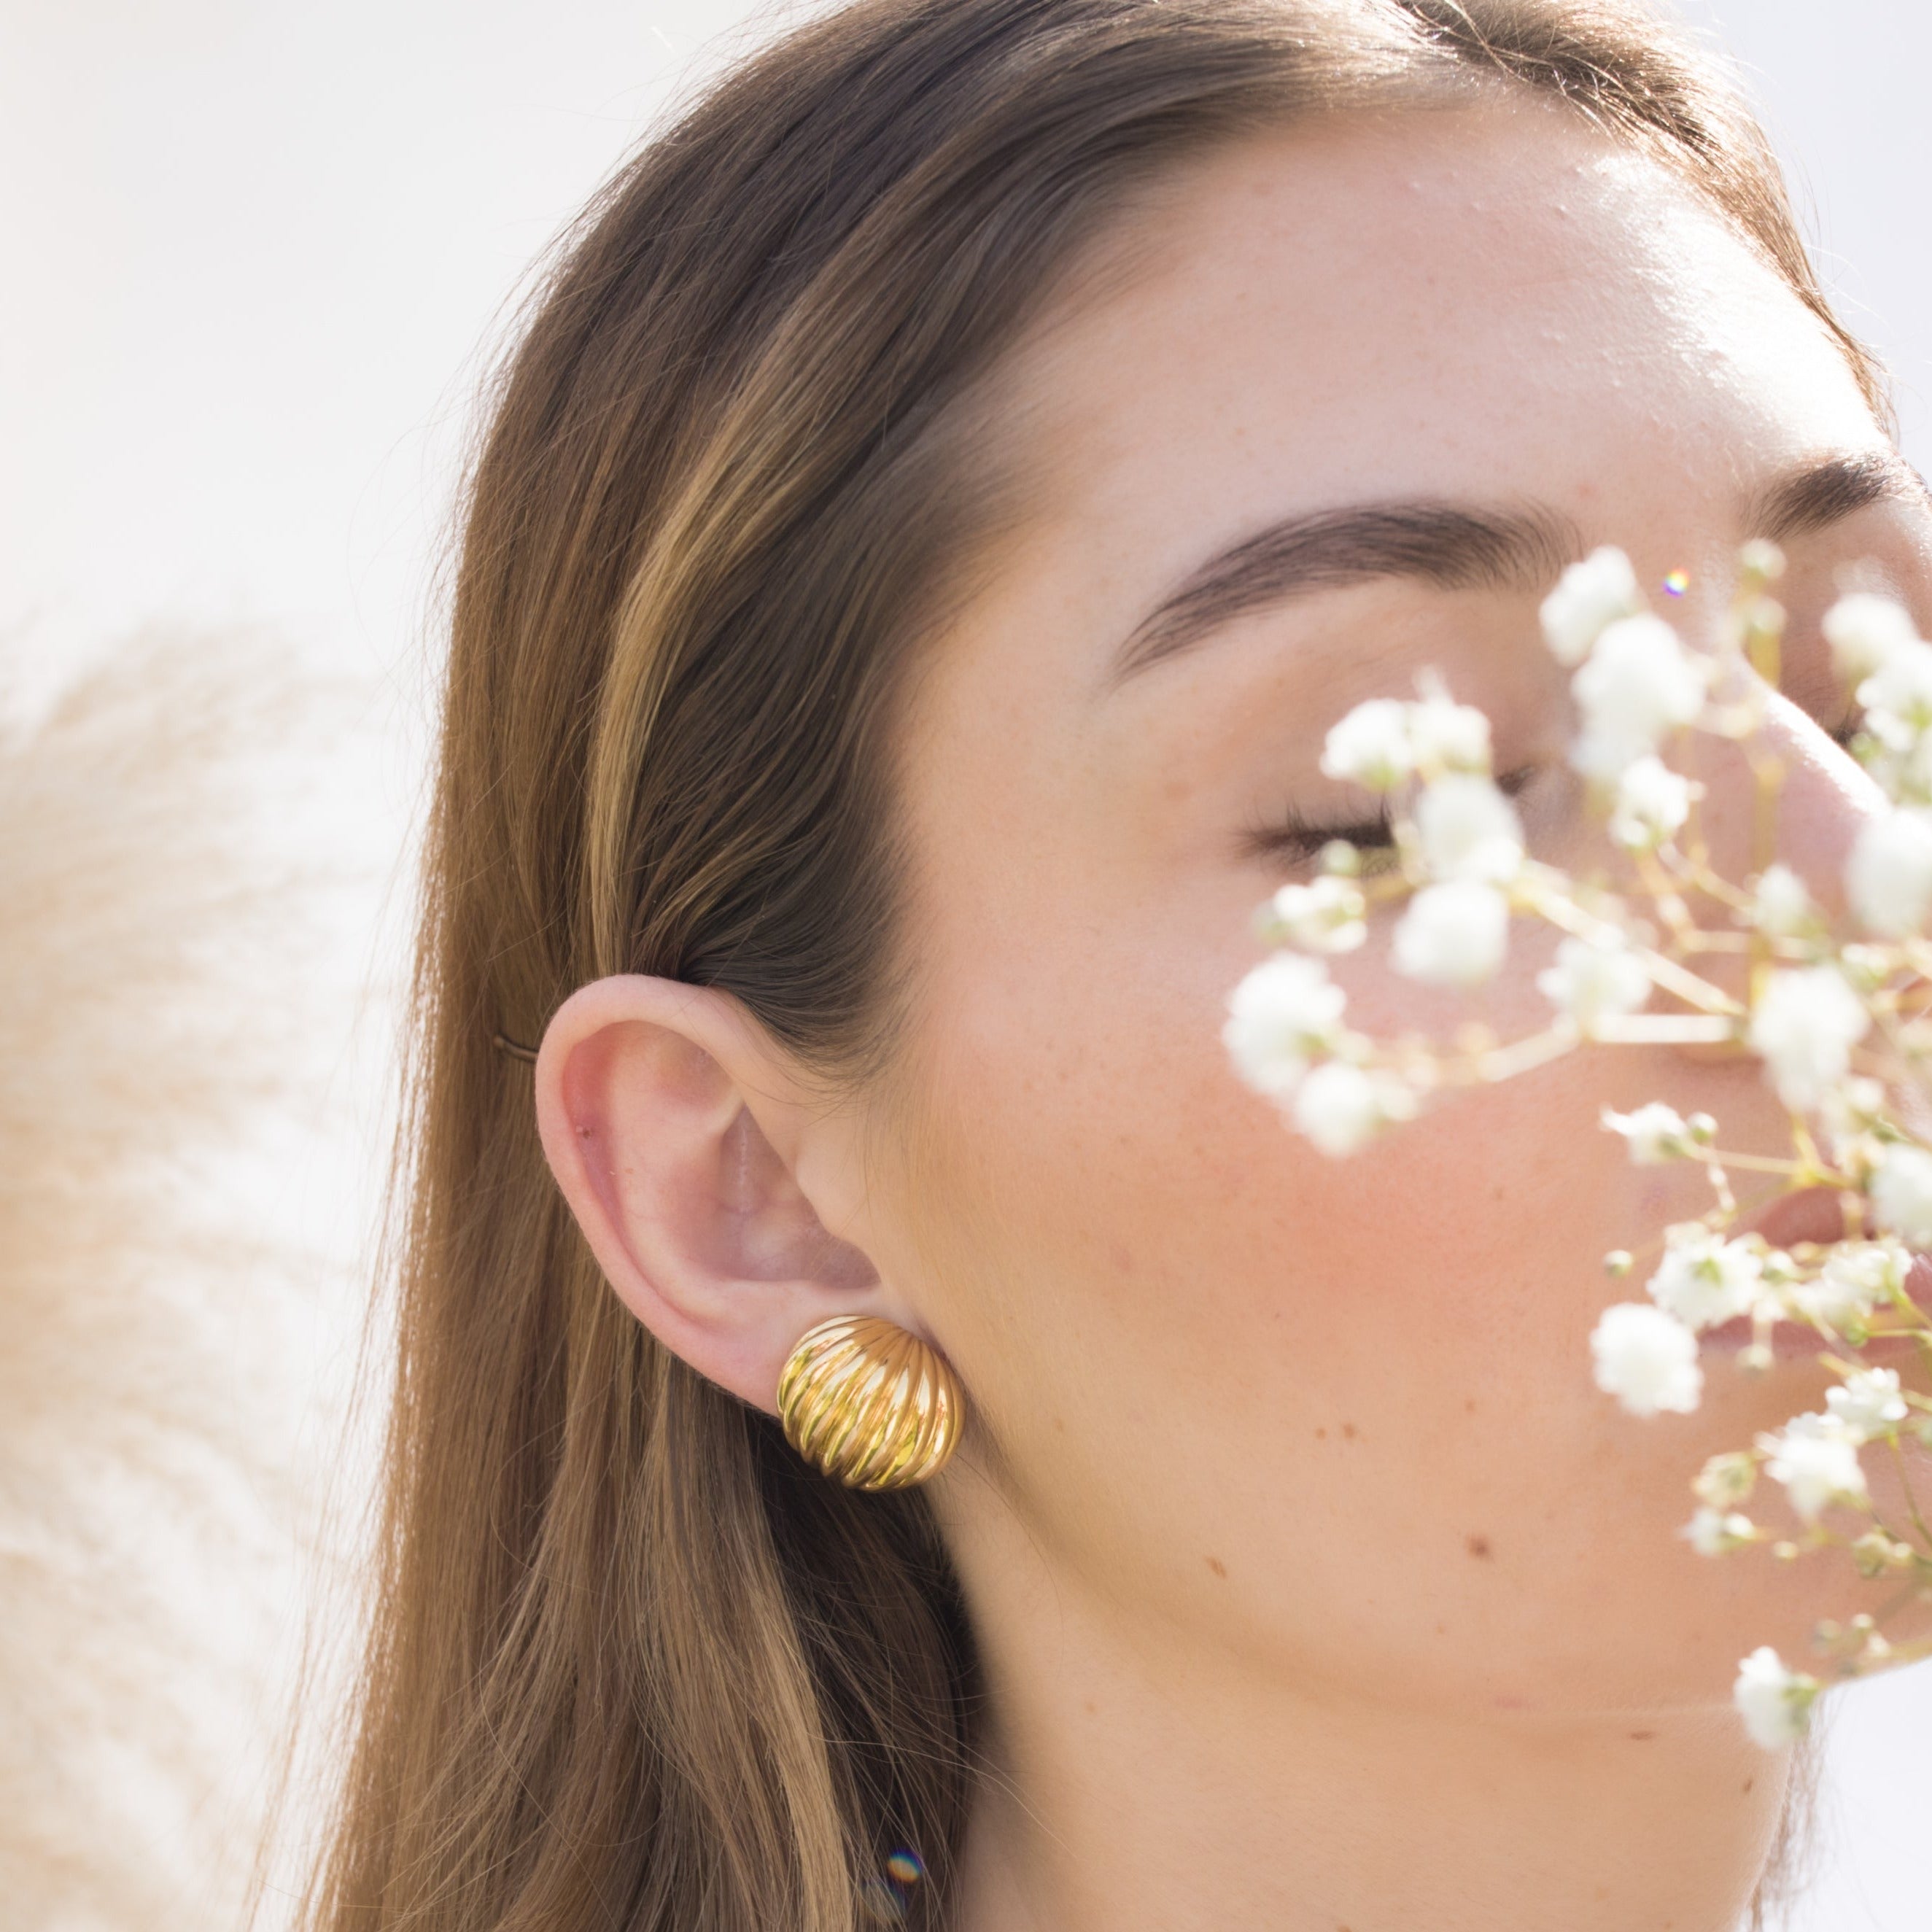 Vintage gold huggie earring worn on a woman’s ear.